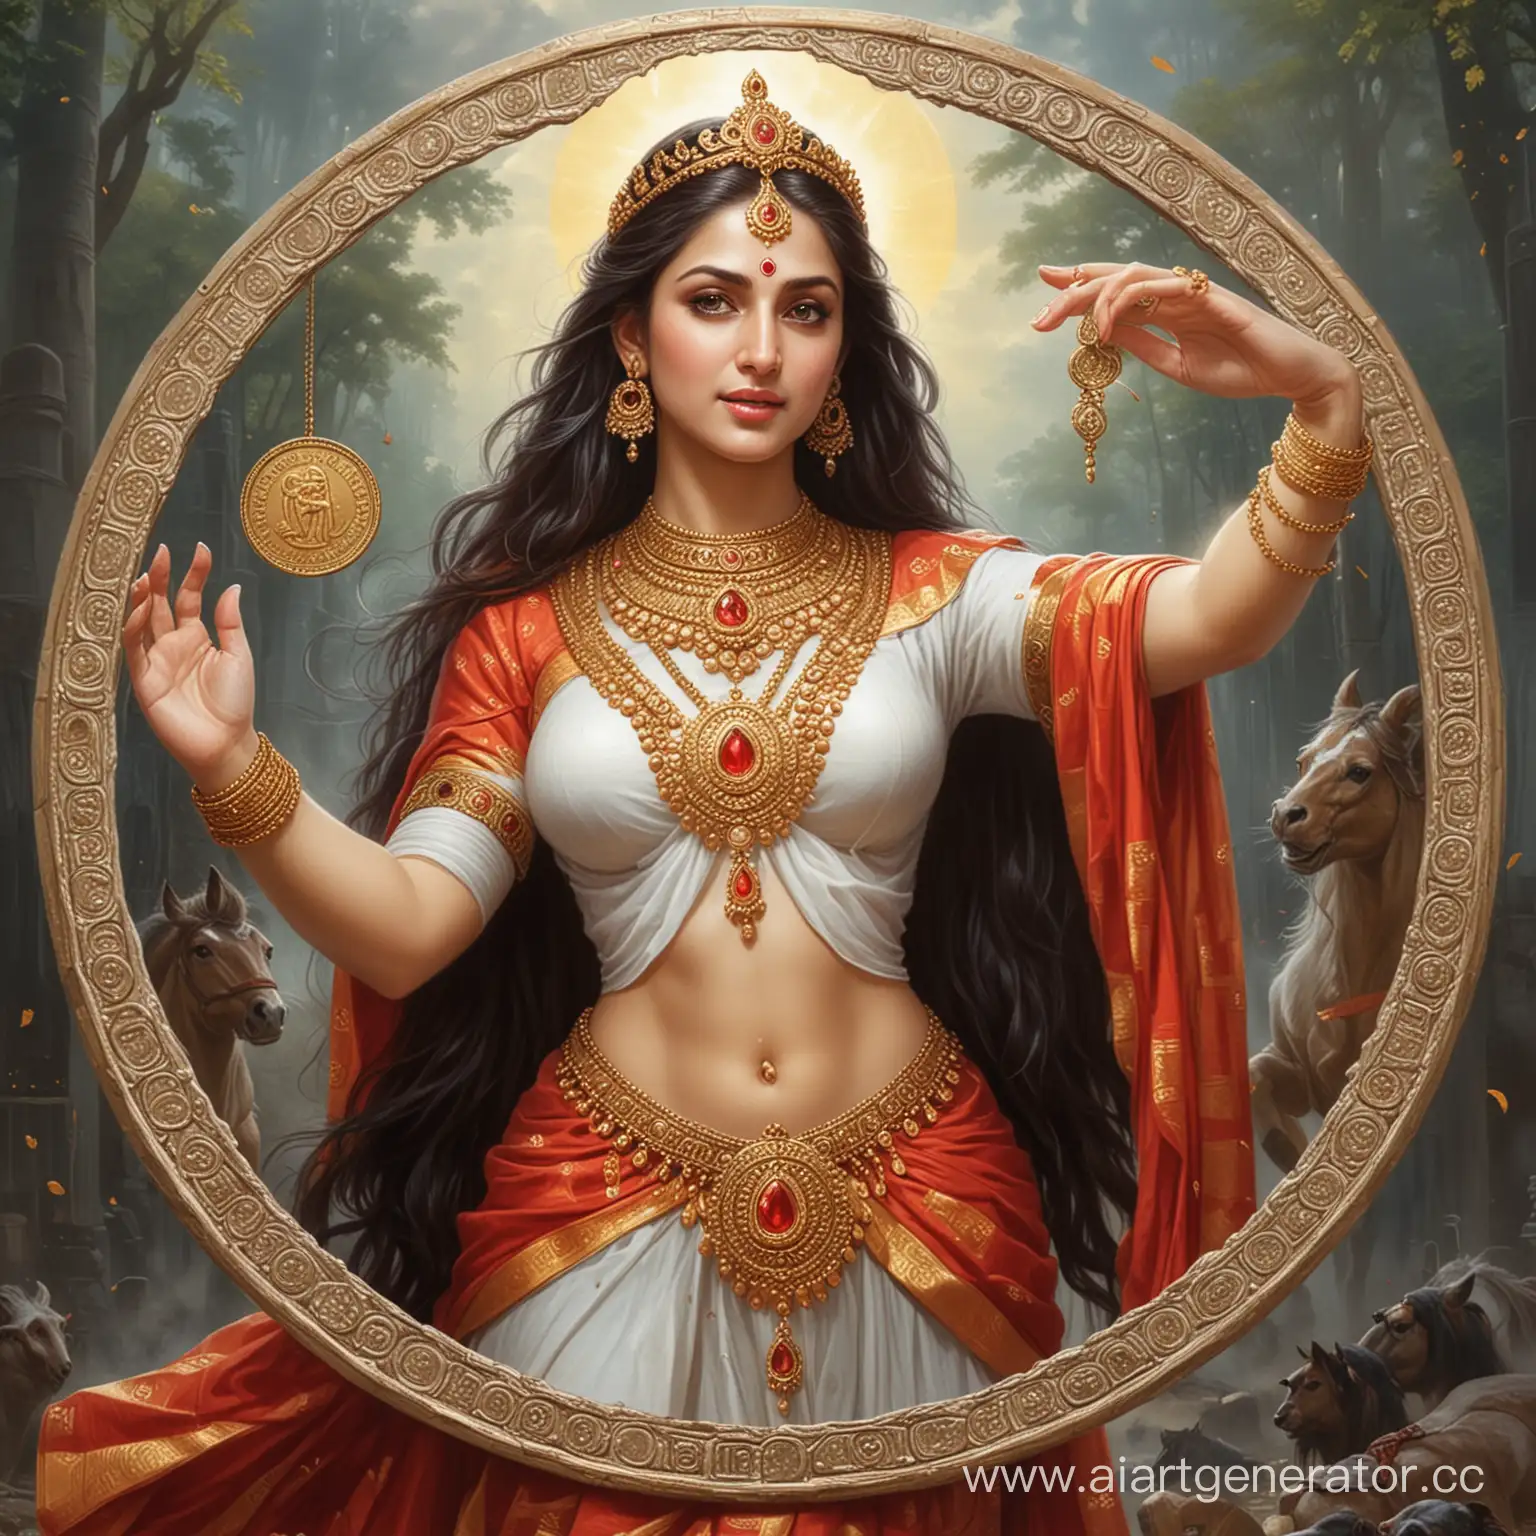 Богиня МАХАГАУРИ благословляет и укрепляет новую монету - РУБЛЬ  ЛИЛА ПОЗИТИВА.